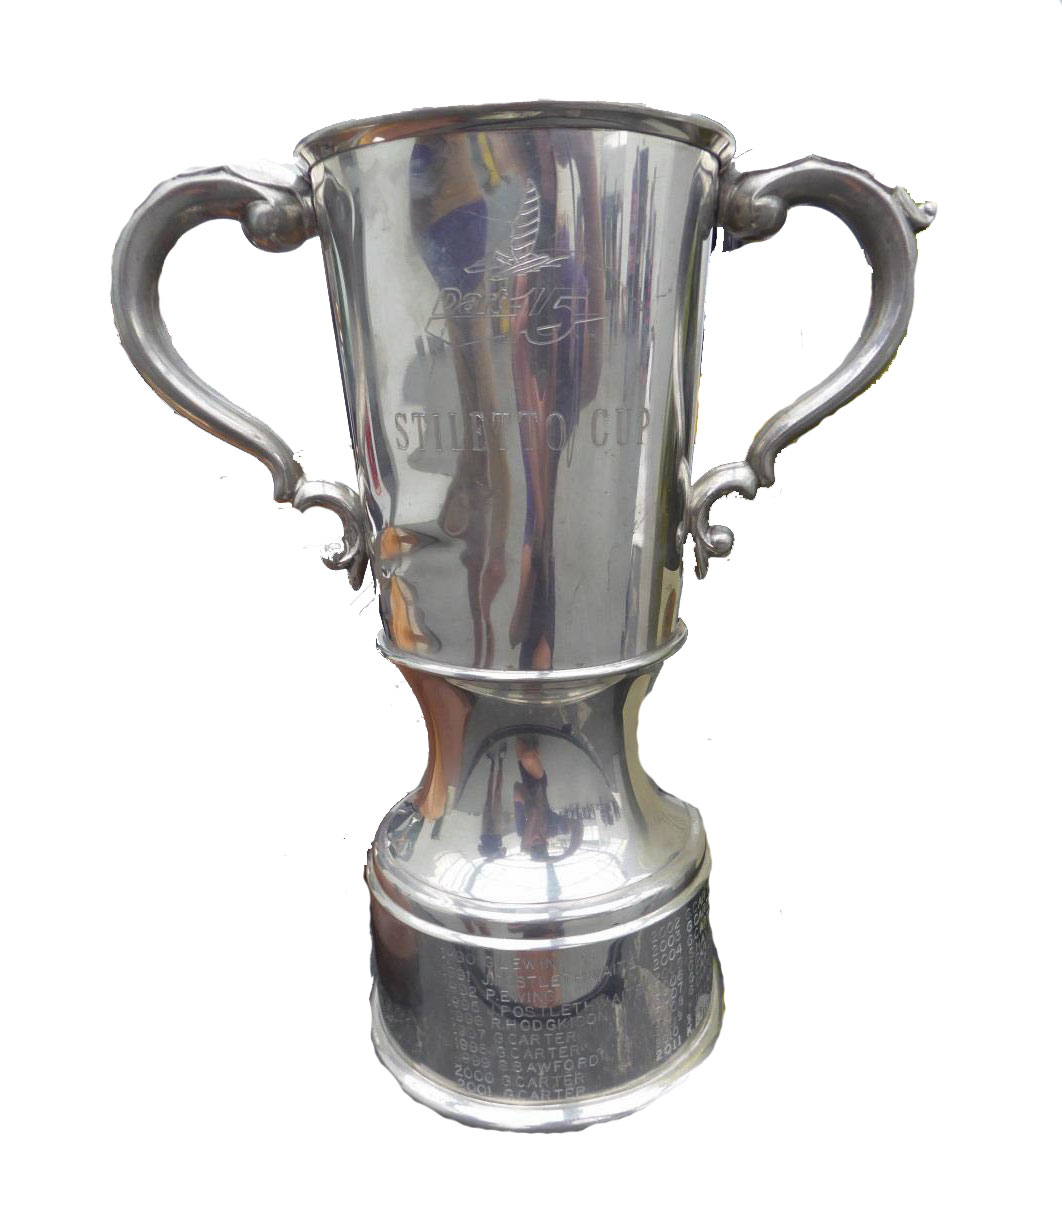 Stiletto Cup